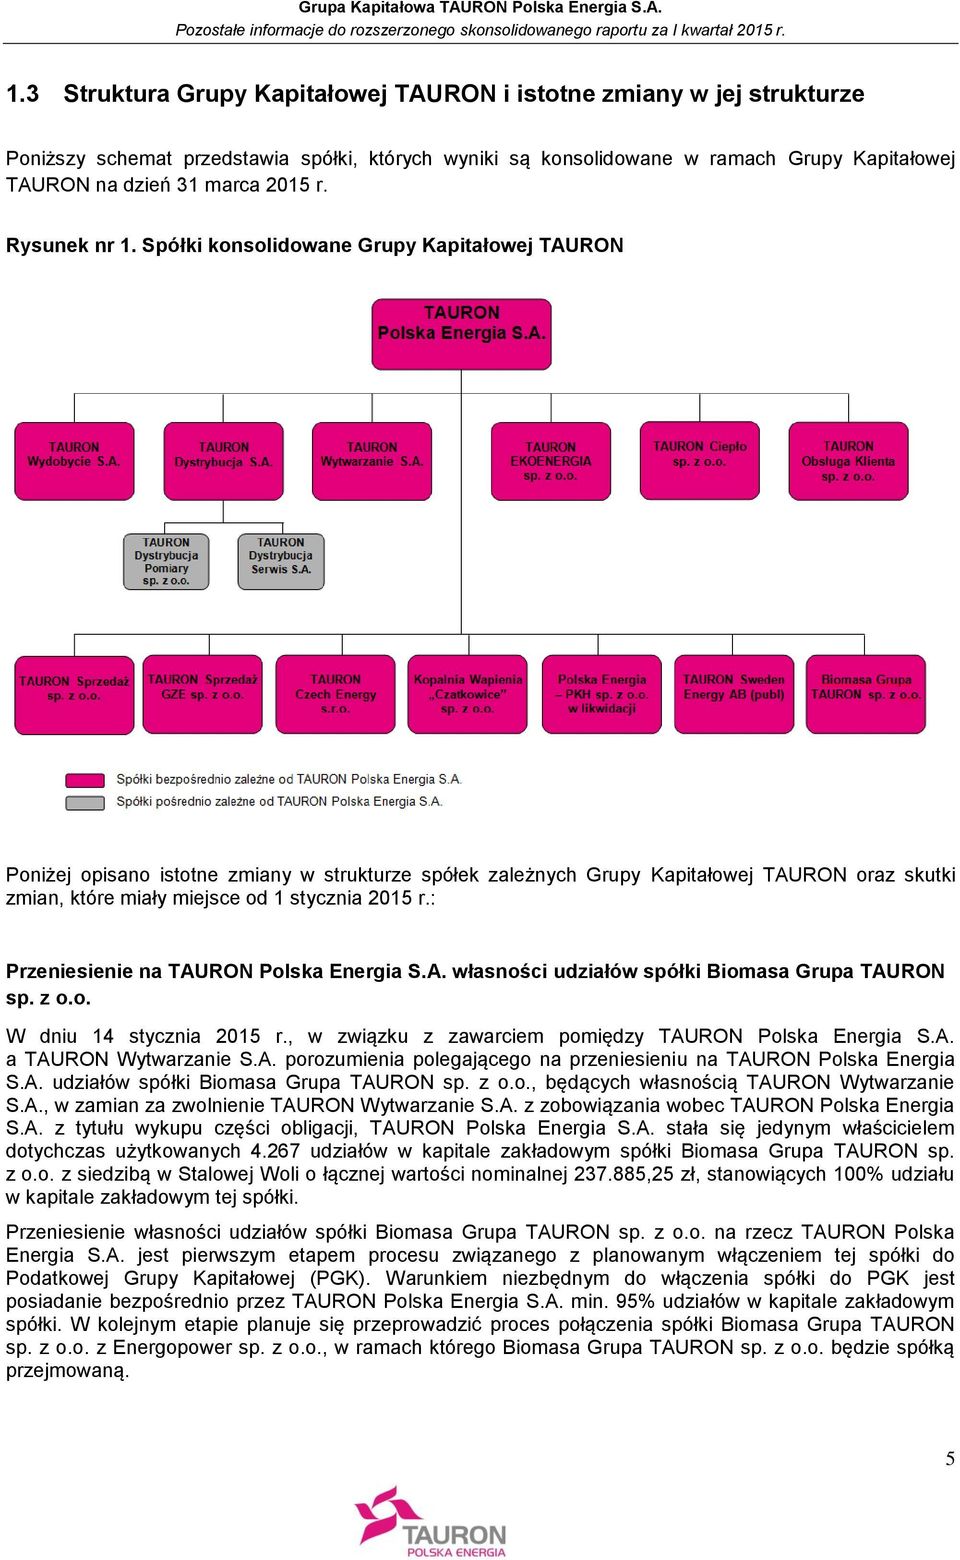 Spółki konsolidowane Grupy Kapitałowej TAURON Poniżej opisano istotne zmiany w strukturze spółek zależnych Grupy Kapitałowej TAURON oraz skutki zmian, które miały miejsce od 1 stycznia 2015 r.